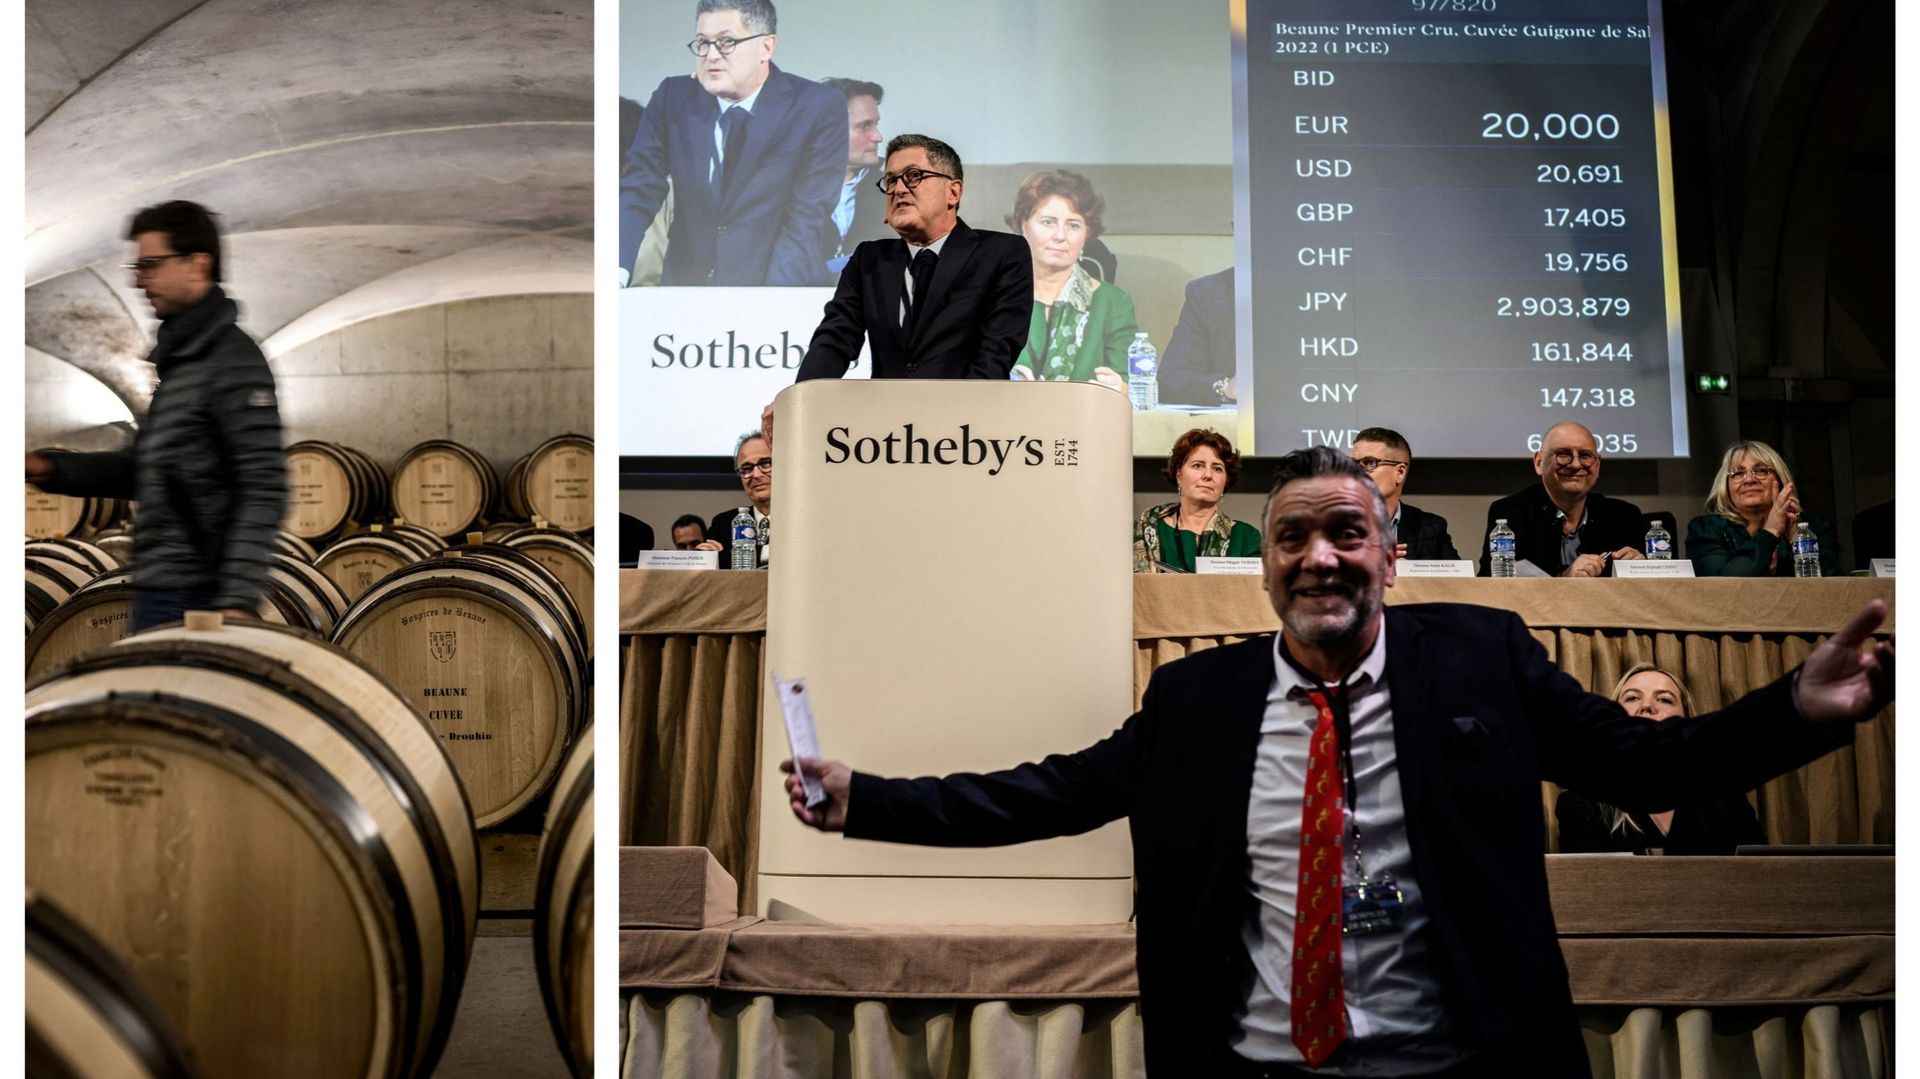 Un commissaire-priseur supervise la 162e vente aux enchères de vins de charité des Hospices de Beaune, le 20 novembre 2022, dans le centre de la France. La " Pièce des Présidents " a été vendue pour 810.000 euros établissant un nouveau record.